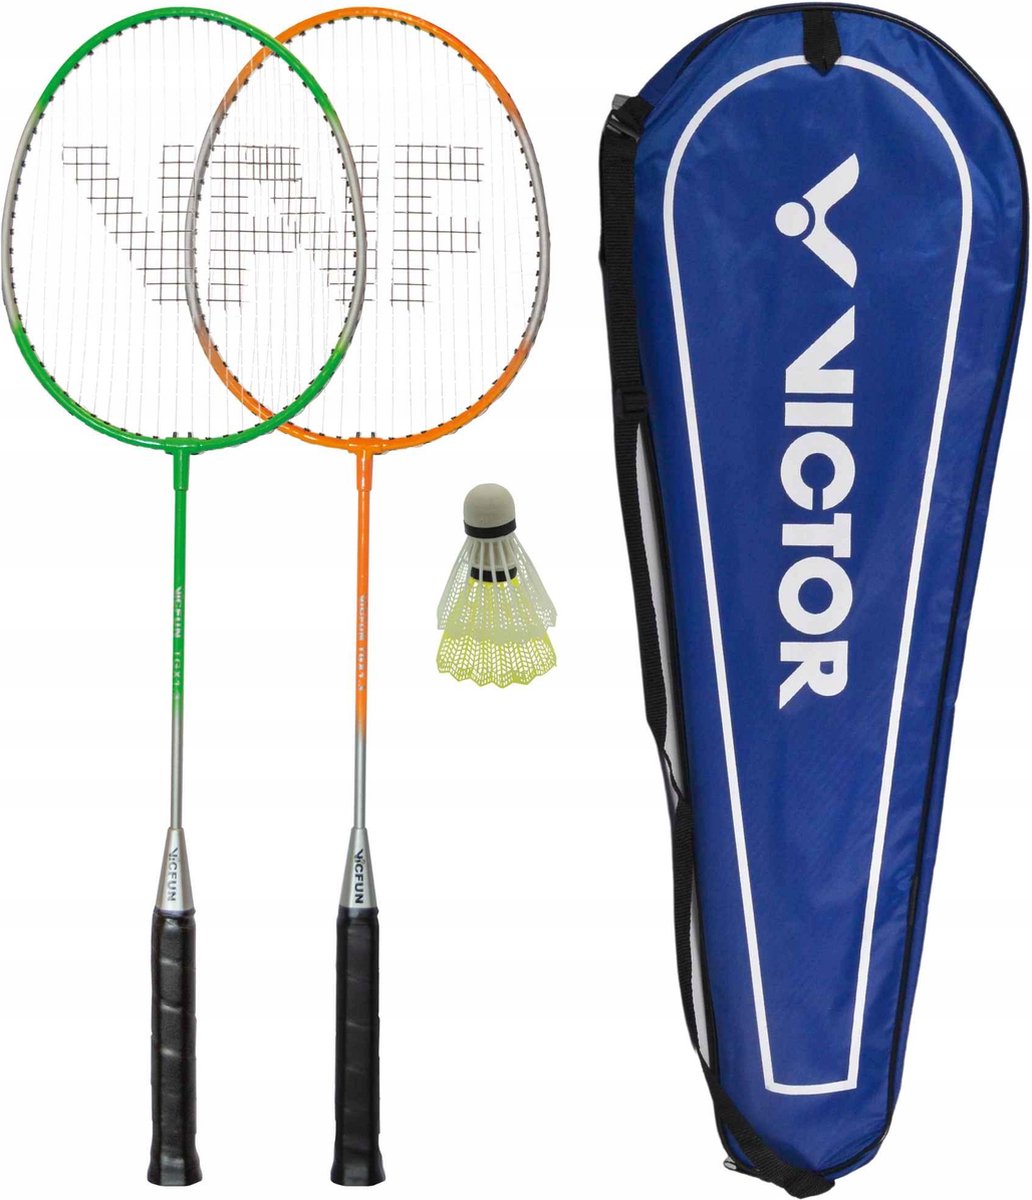 Playos® - Badmintonset - 2 Rackets - Oranje / Groen - in Hoes - Inclusief Shuttles - Badminton Rackets - Badminton Set - Professioneel